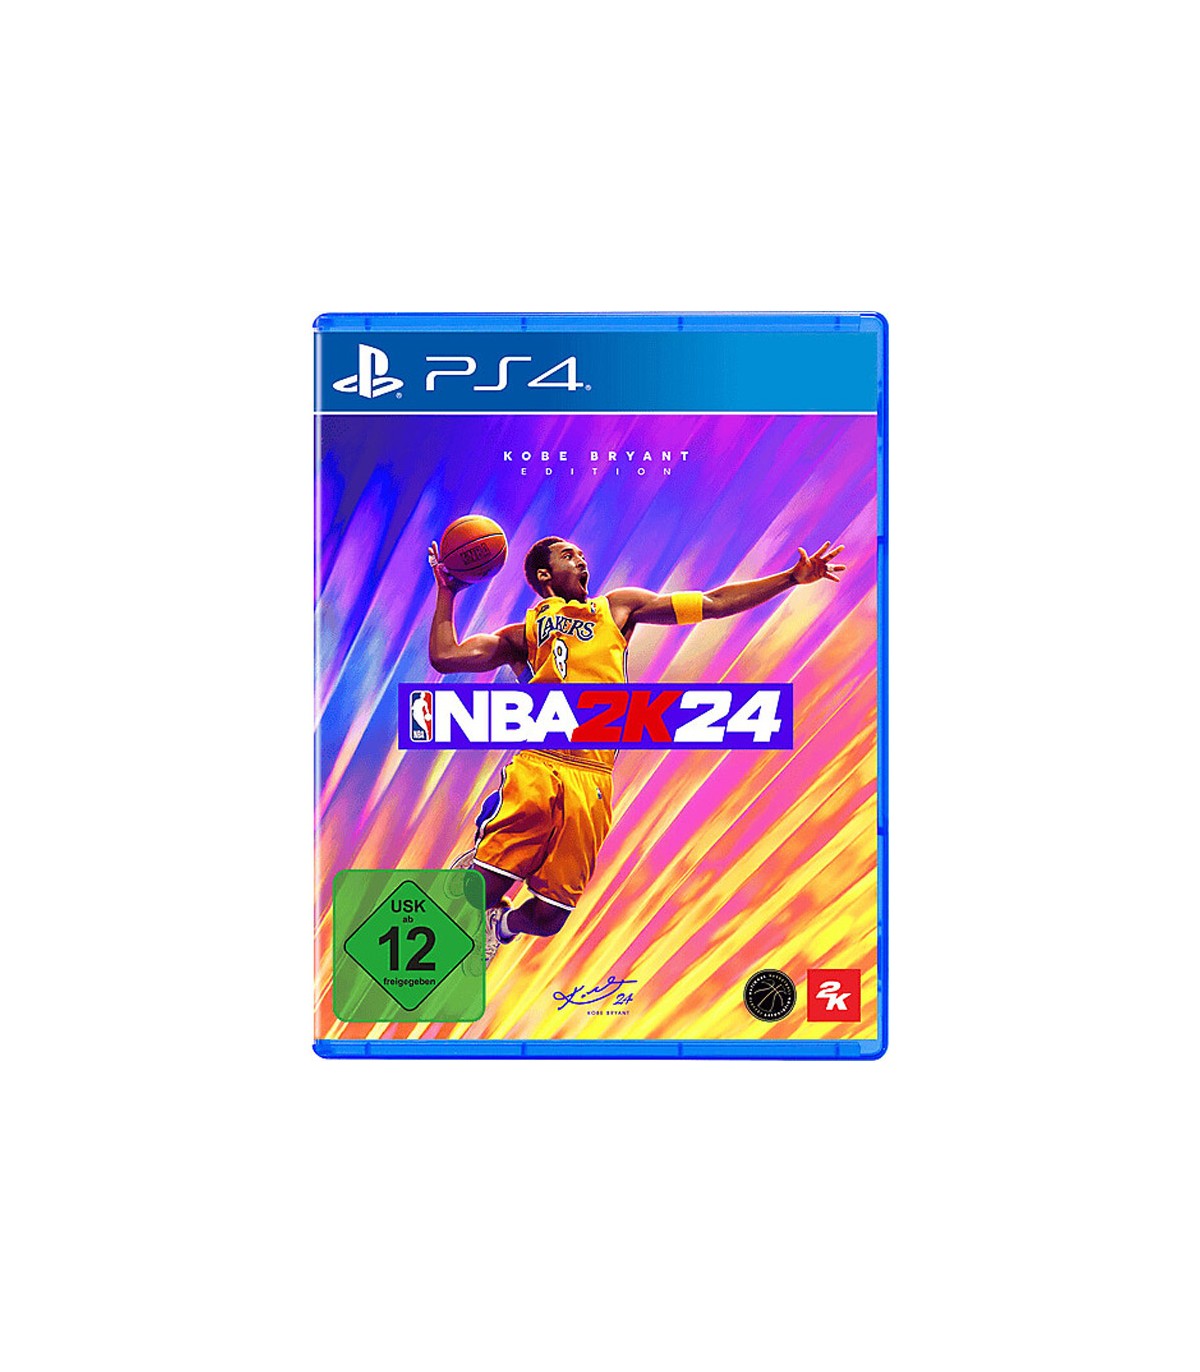 بازی NBA 2K24 نسخه Kobe Bryant - پلی استیشن 4